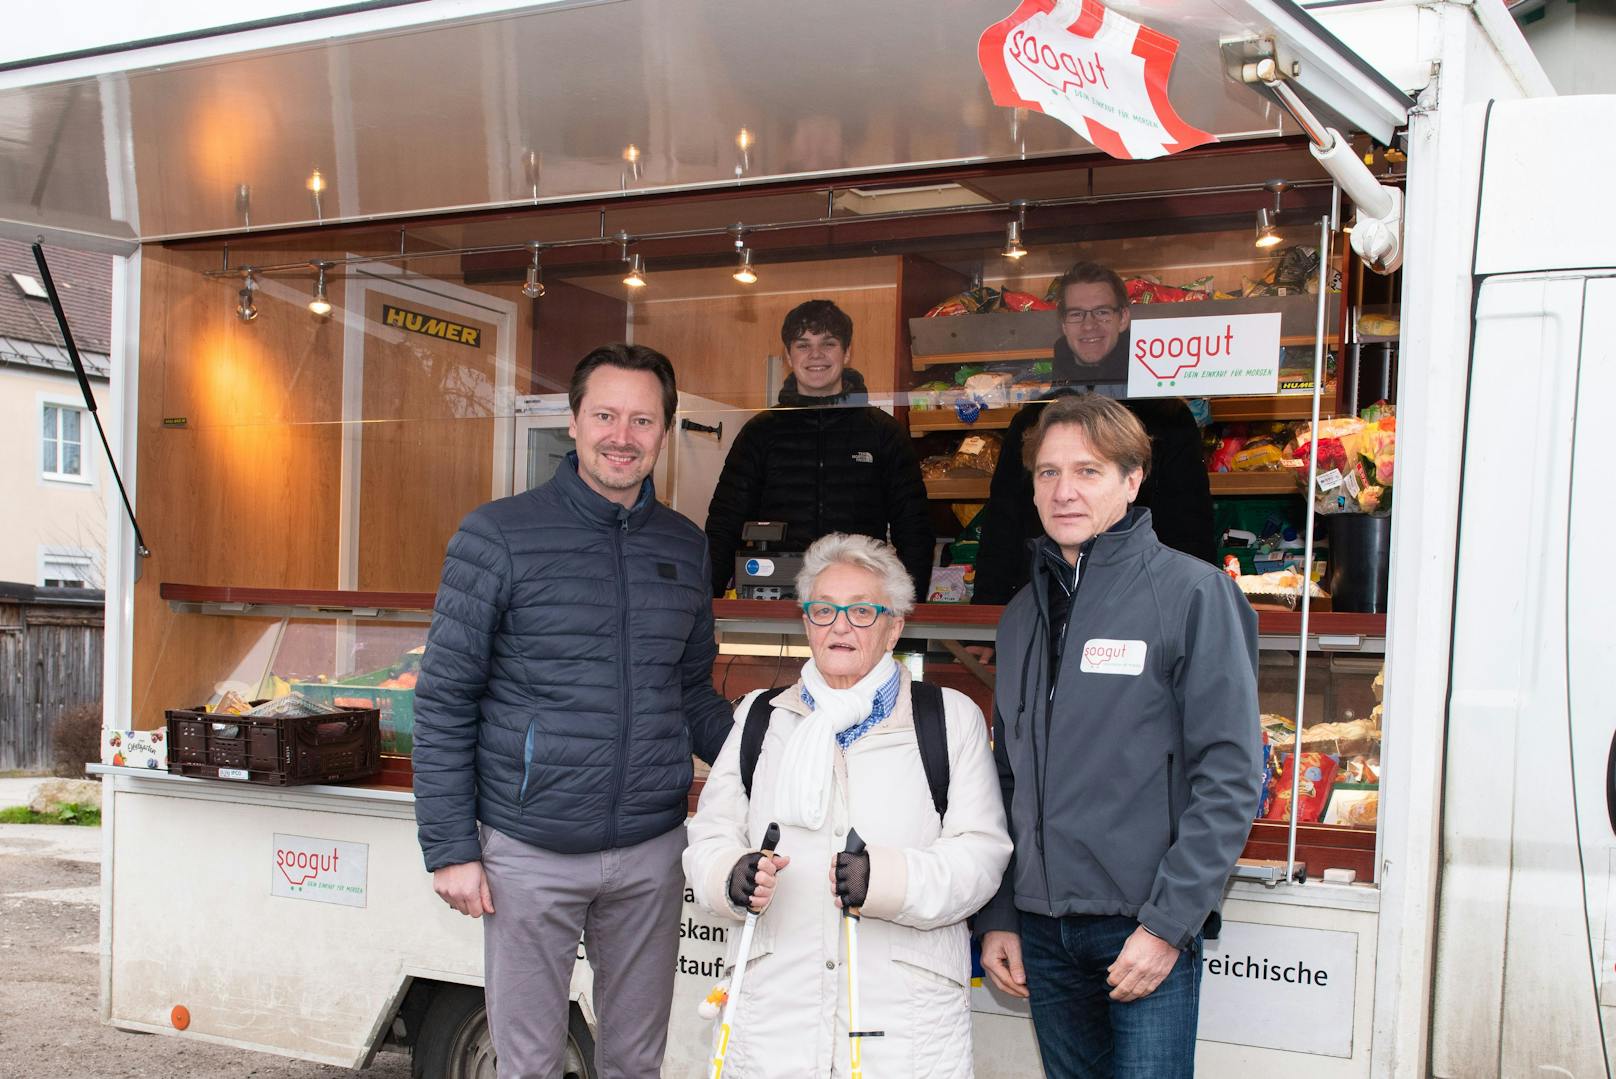 Bürgermeister Rainer Handlfinger freut sich über den Mobilen soogut-Verkaufstand in seiner Gemeinde.